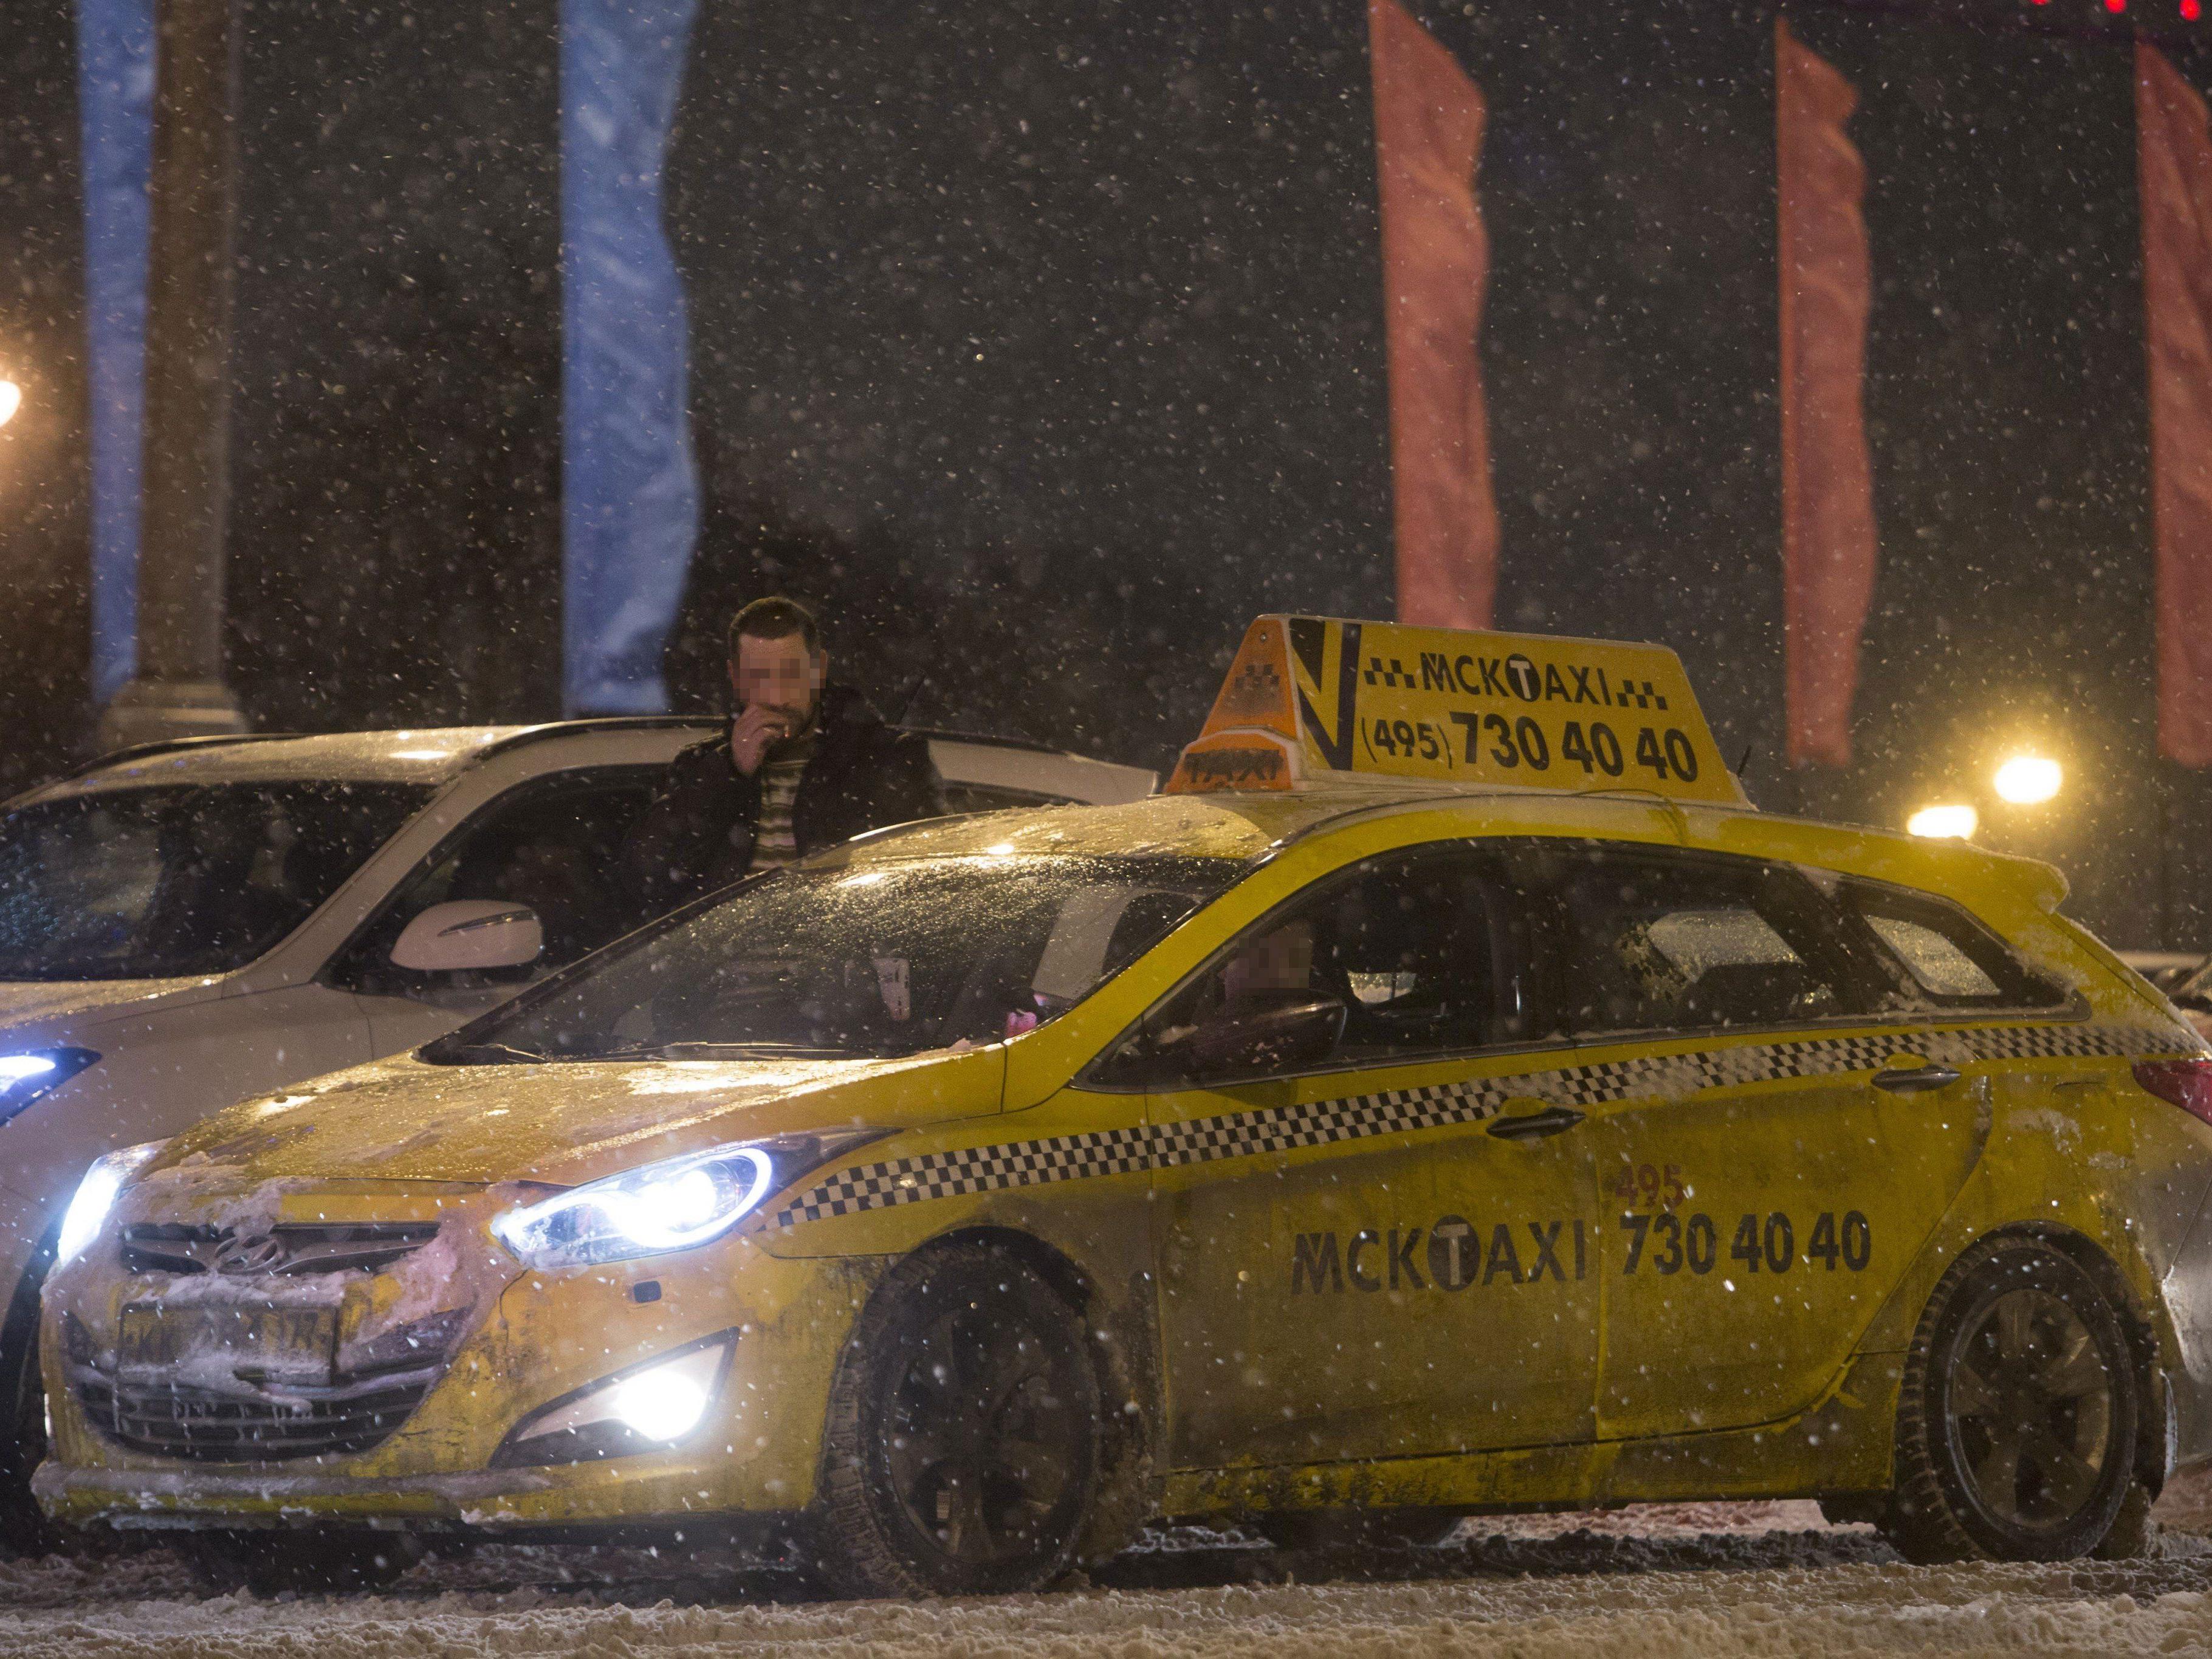 Österreicher in Moskau erstochen - Taxifahrer als mutmaßlicher Täter festgenommen